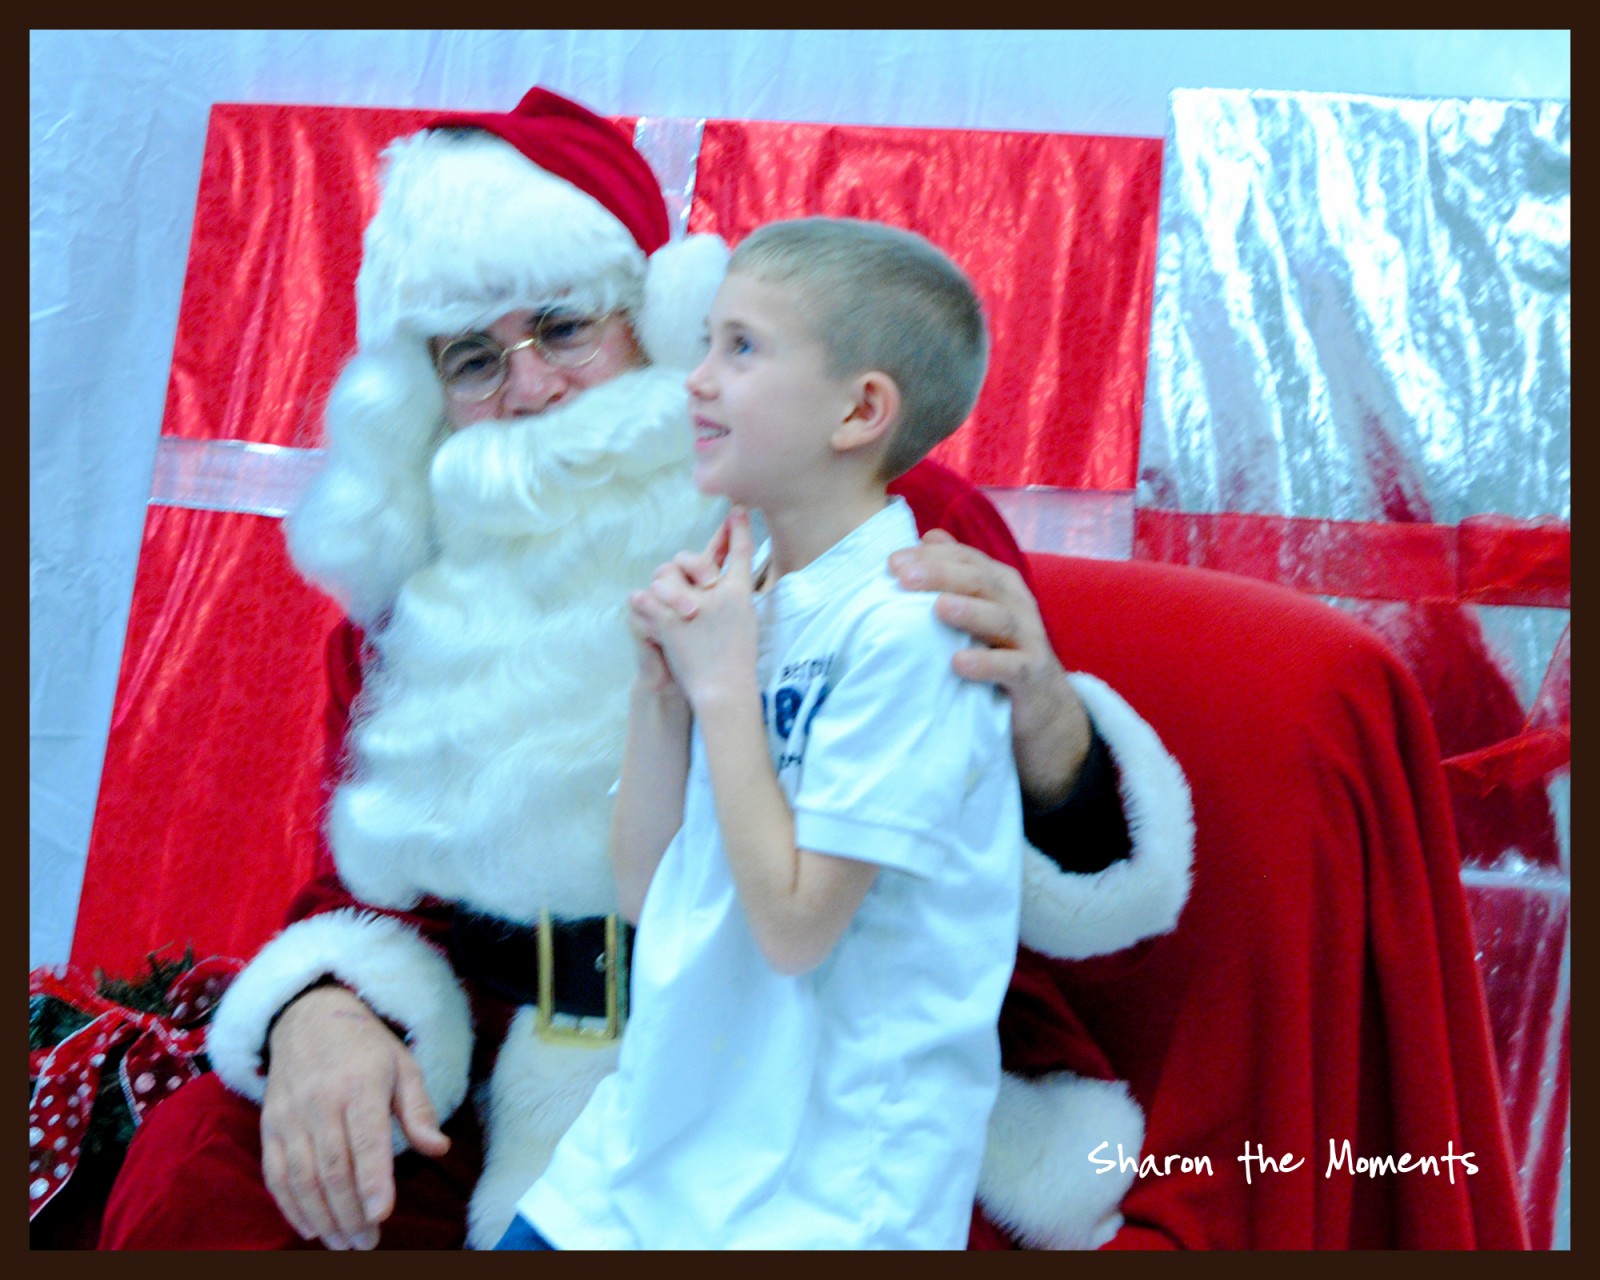 Talking to Santa Claus|Sharon the Moments blog